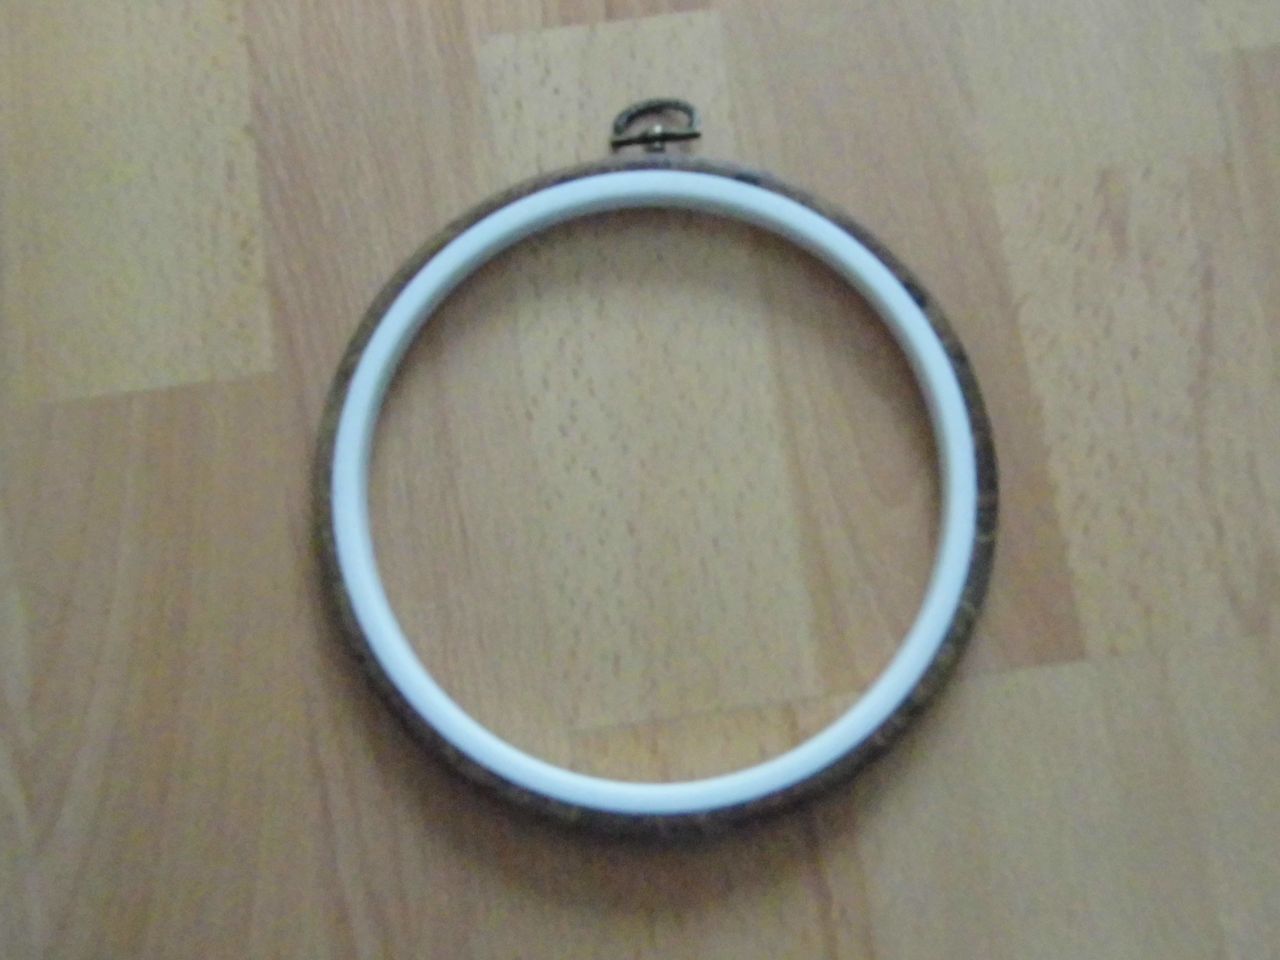 Faerezett flexi kerek 16,5 cm